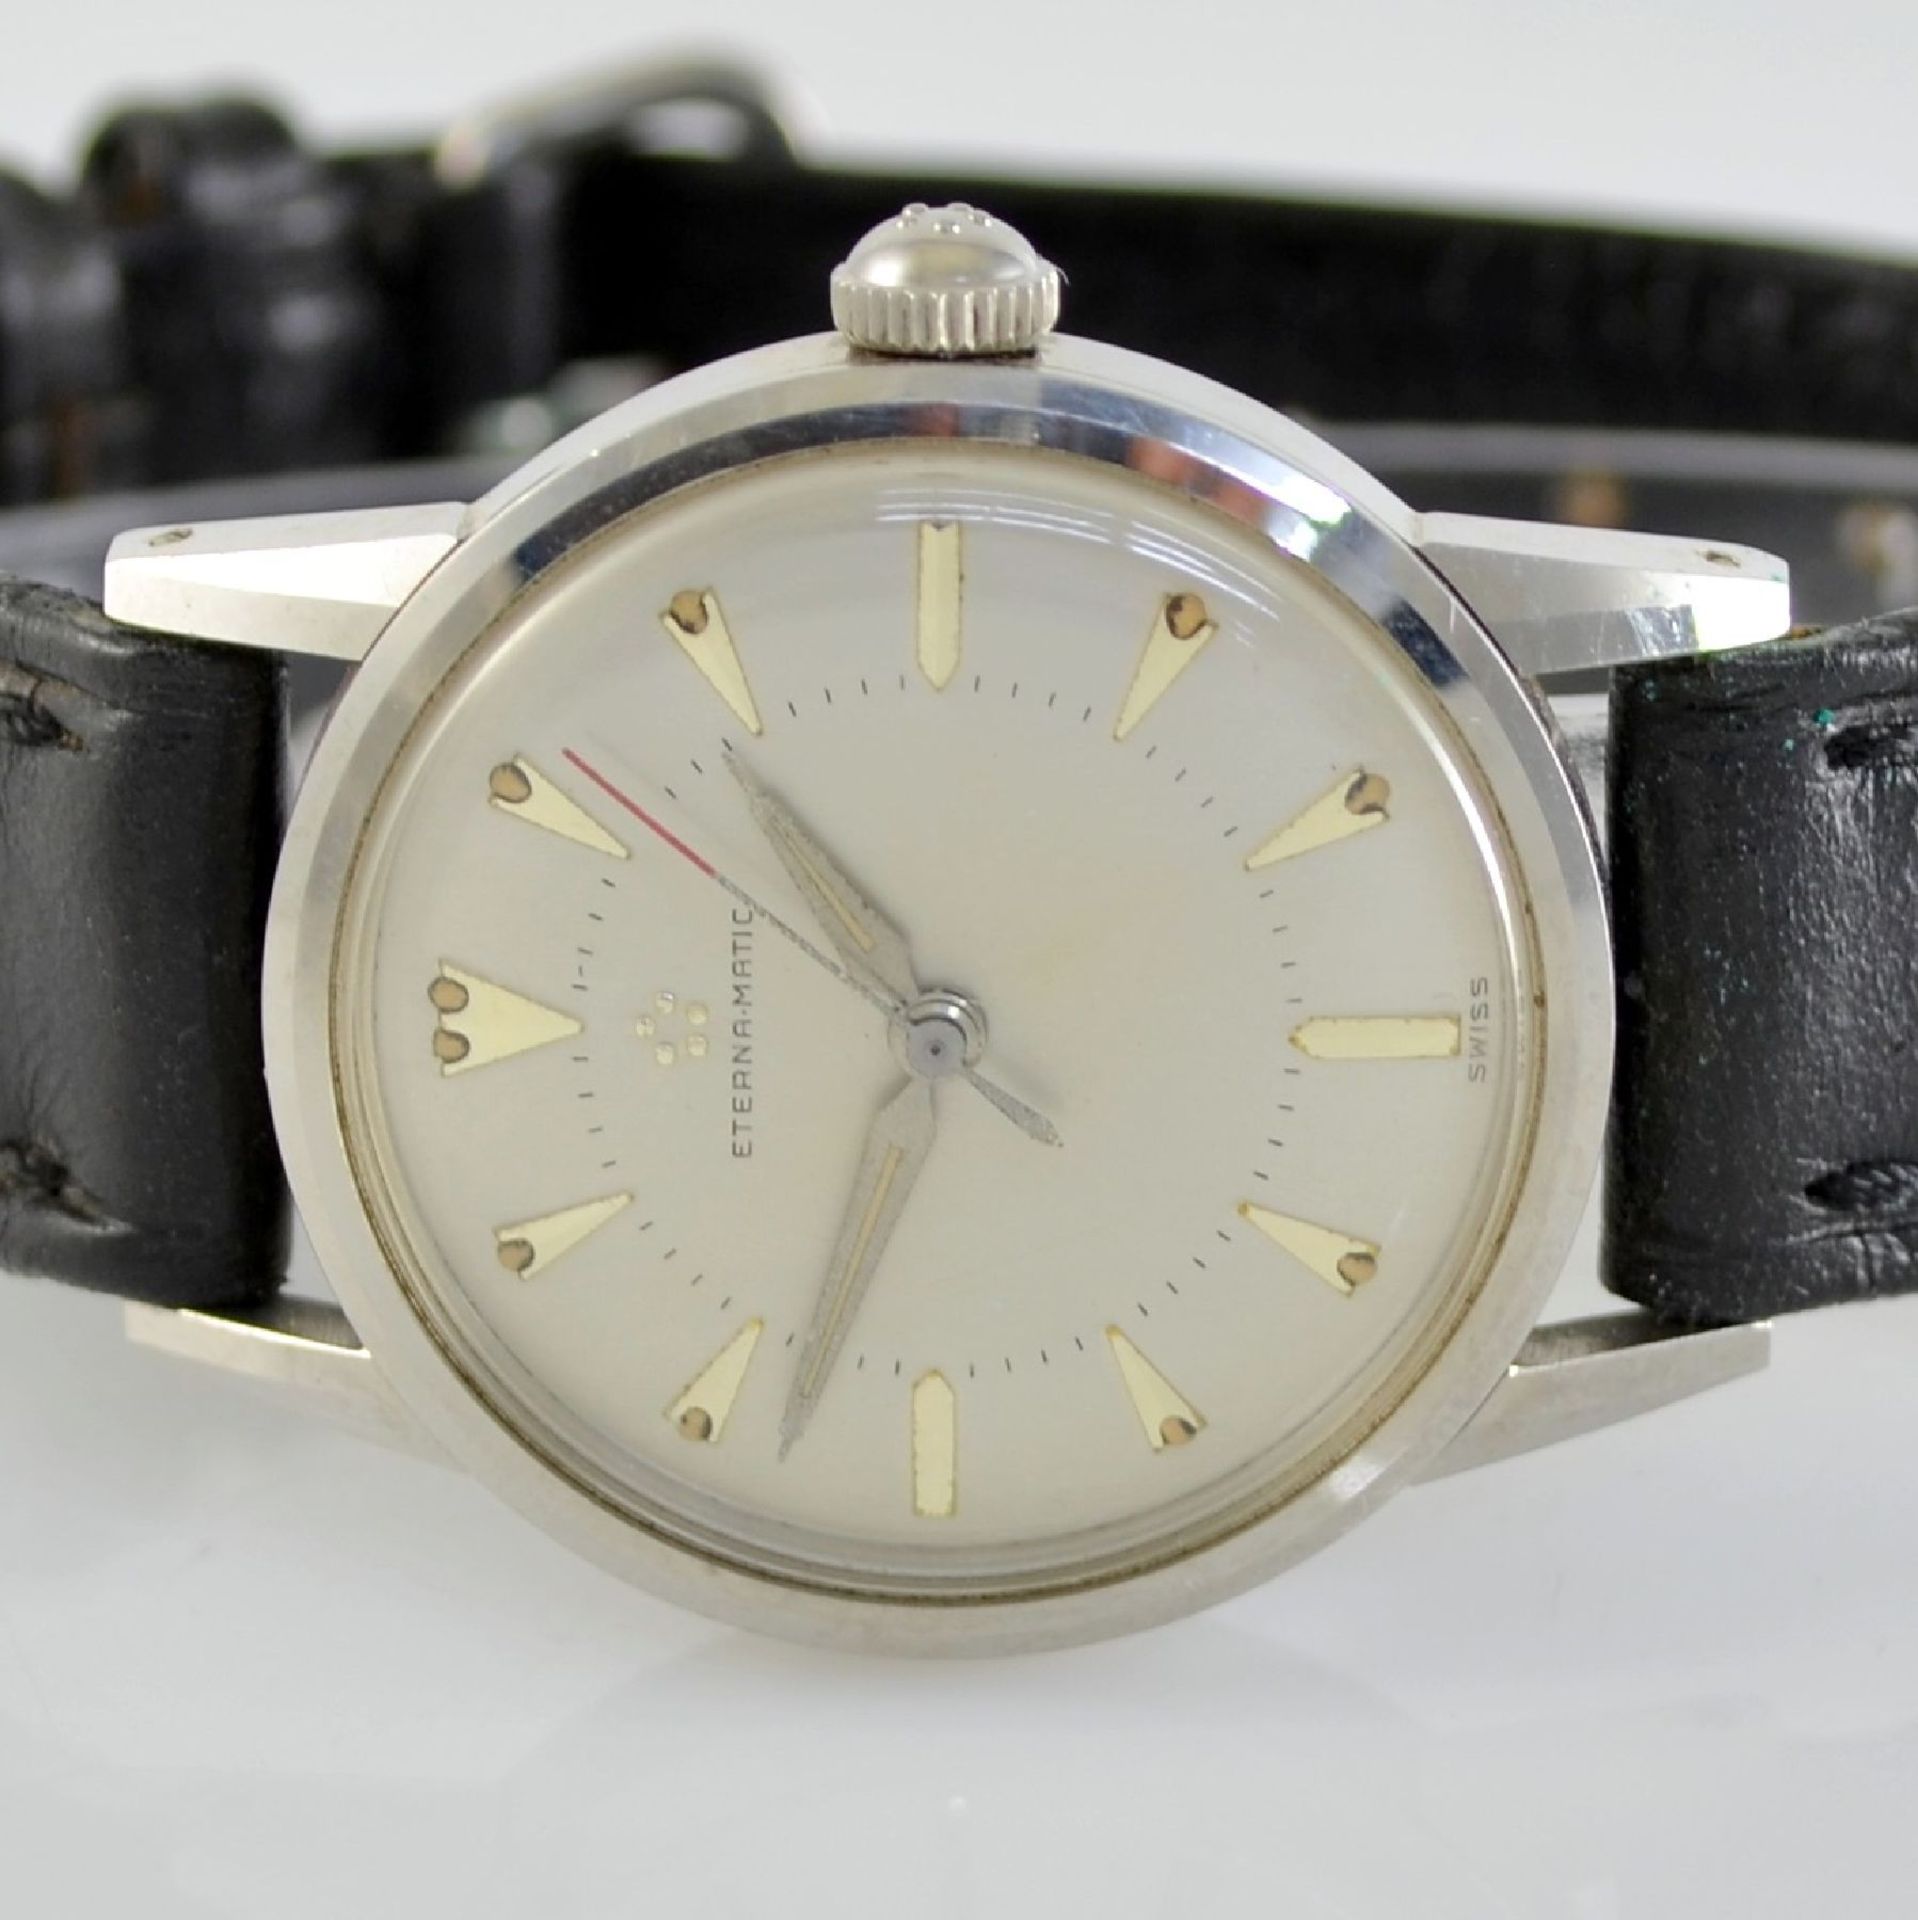 ETERNA-MATIC 2 wristwatches in steel, Switzerland around 1955, case backs screwed down, silvered - Bild 8 aus 12